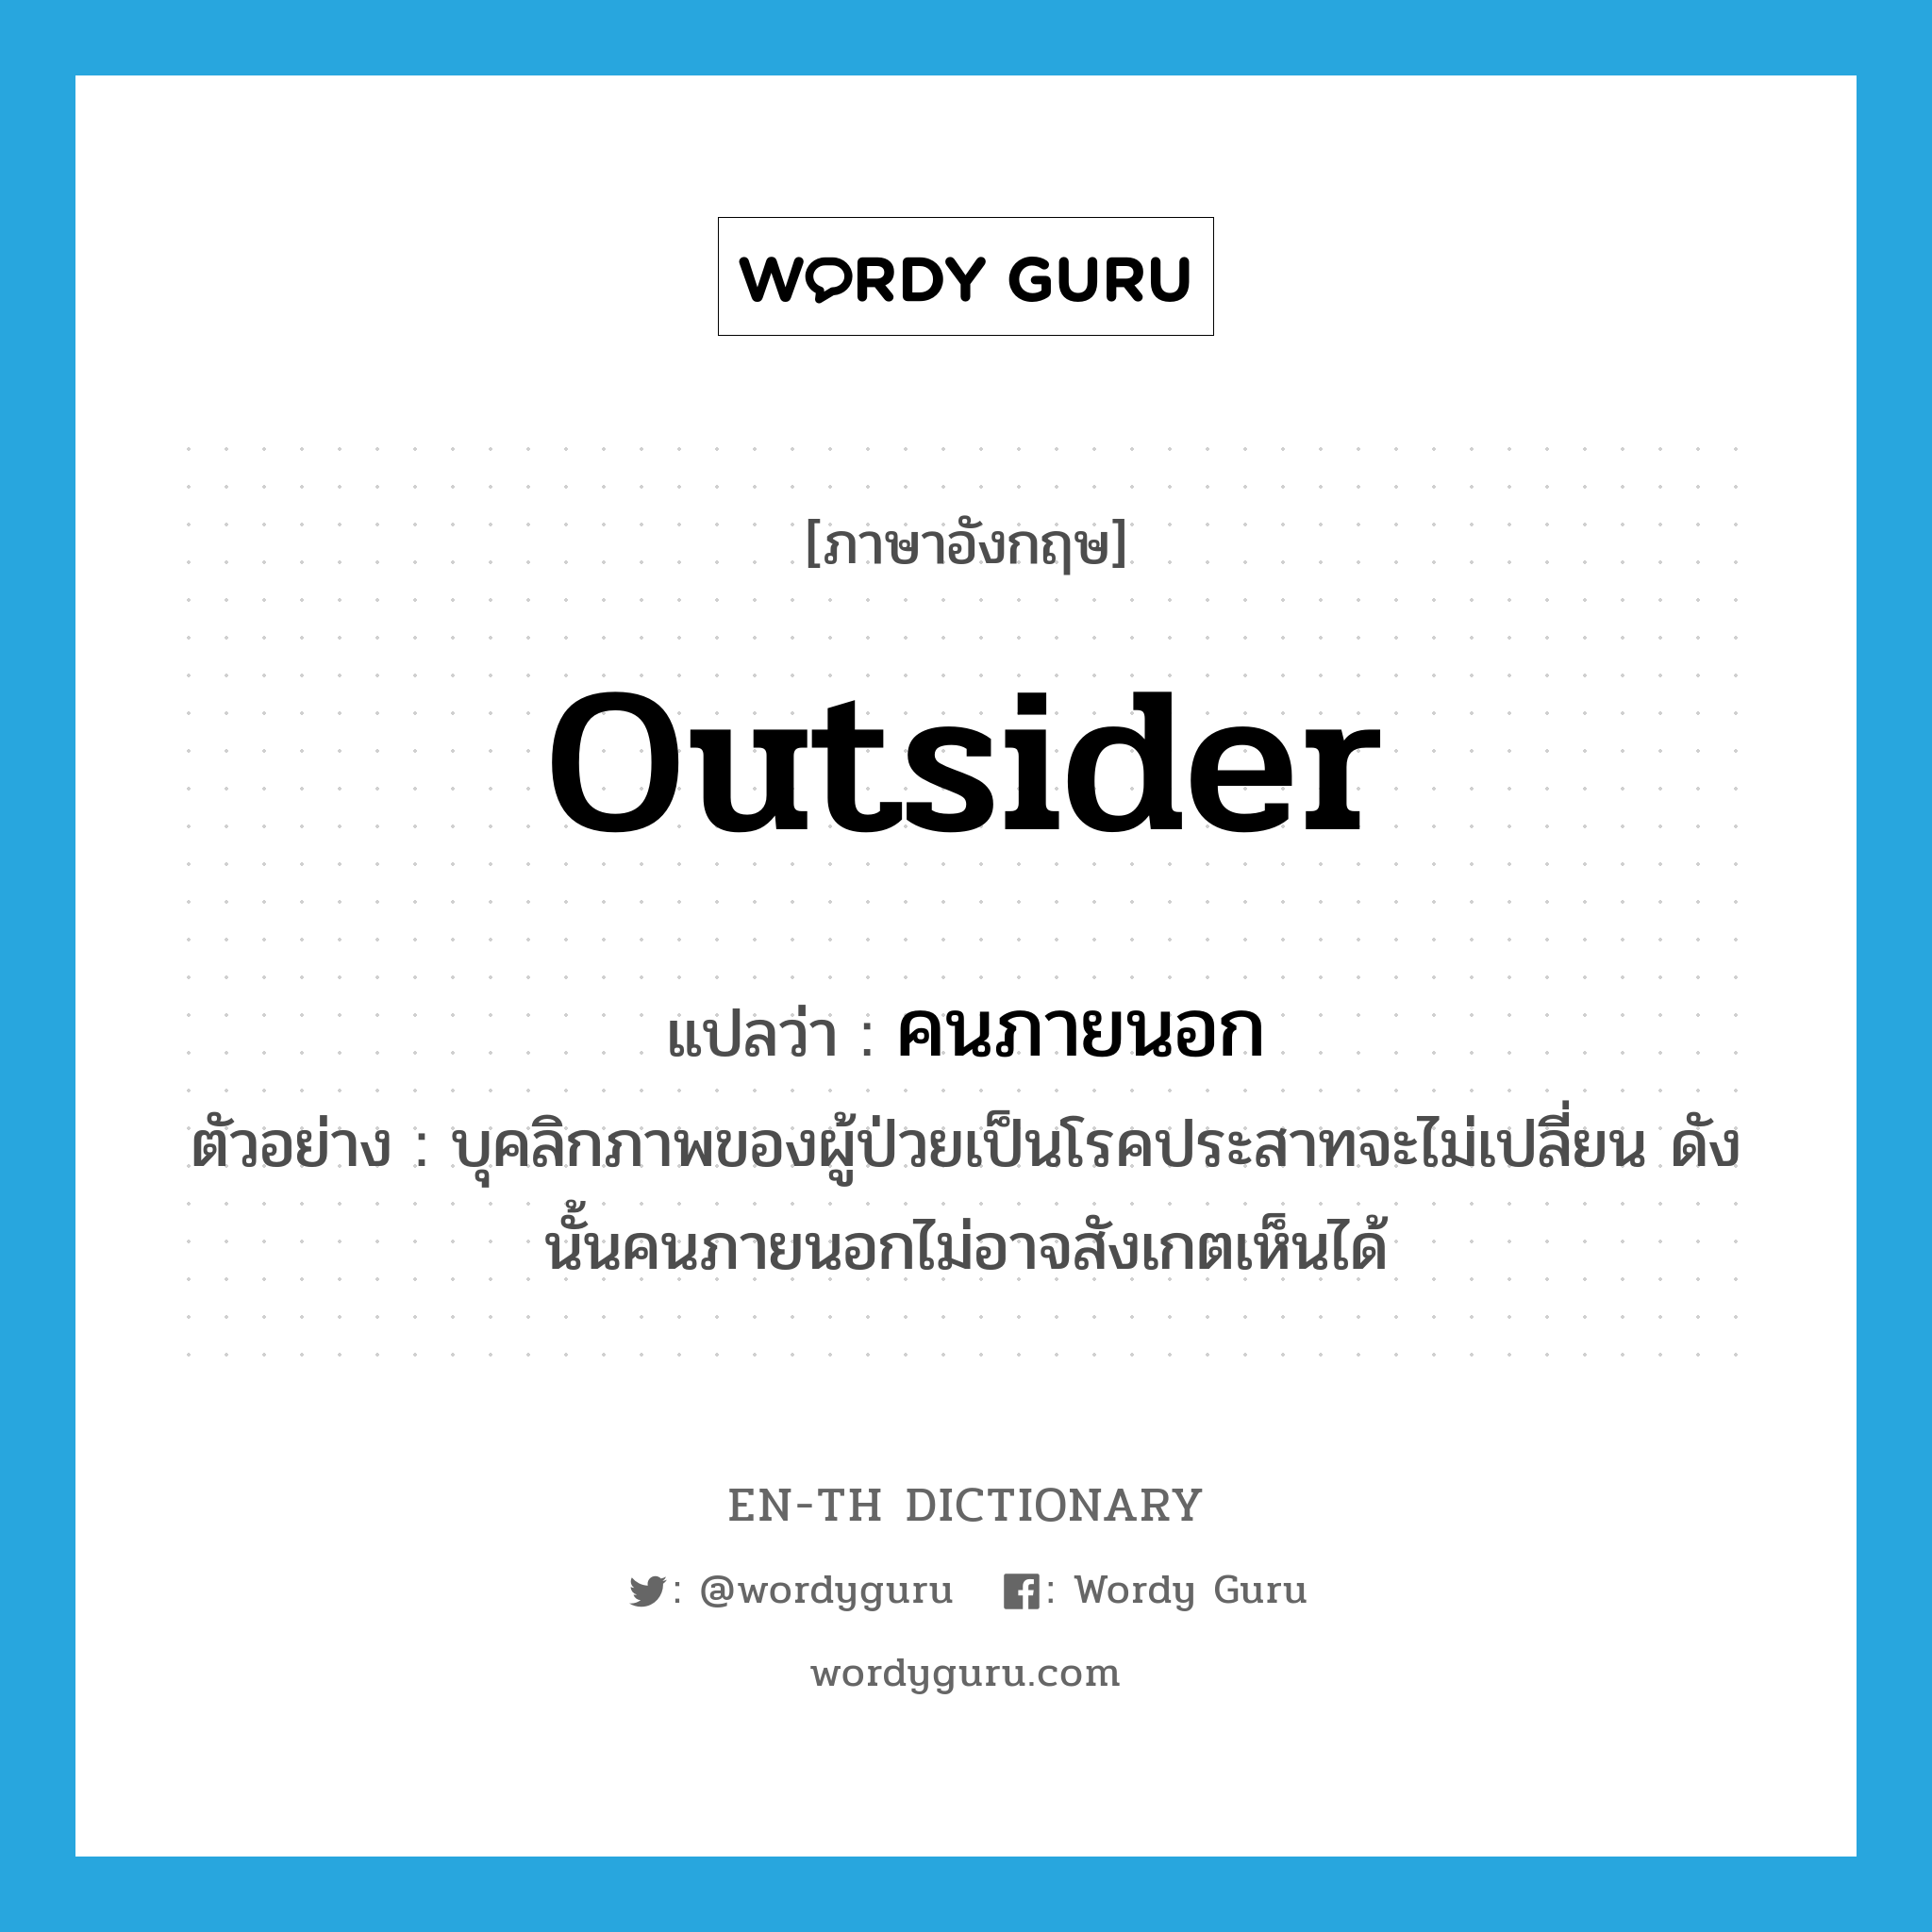 outsider แปลว่า?, คำศัพท์ภาษาอังกฤษ outsider แปลว่า คนภายนอก ประเภท N ตัวอย่าง บุคลิกภาพของผู้ป่วยเป็นโรคประสาทจะไม่เปลี่ยน ดังนั้นคนภายนอกไม่อาจสังเกตเห็นได้ หมวด N